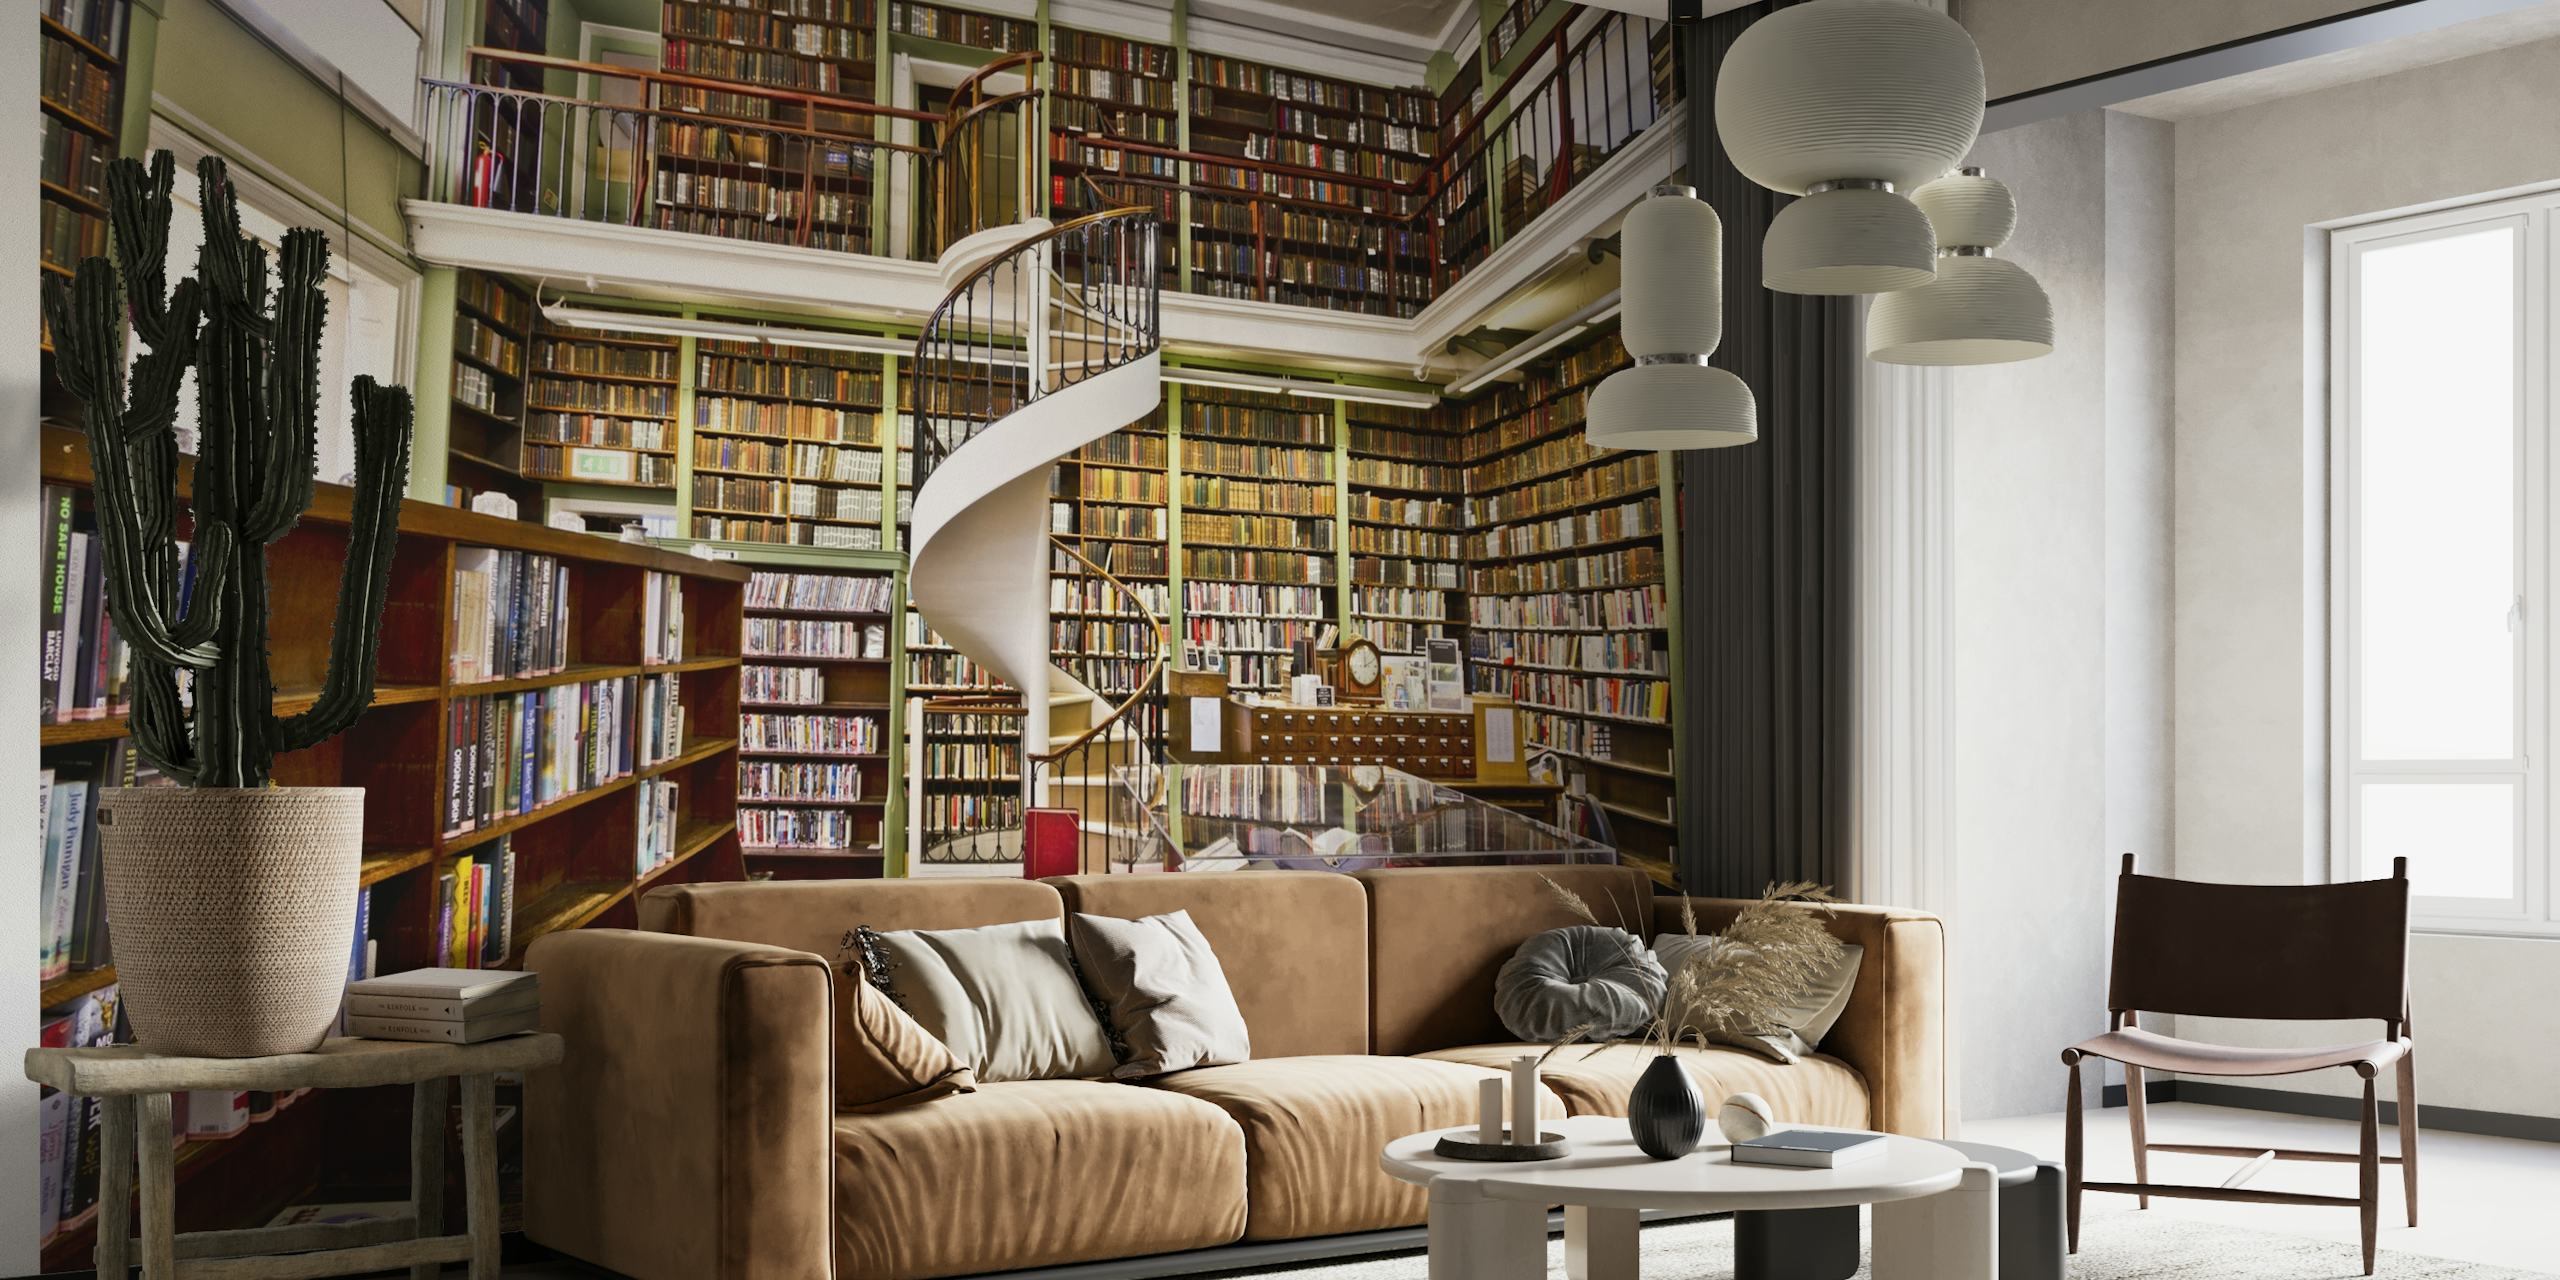 Fototapete einer gemütlichen Bibliothek mit Bücherregalen und einer Wendeltreppe